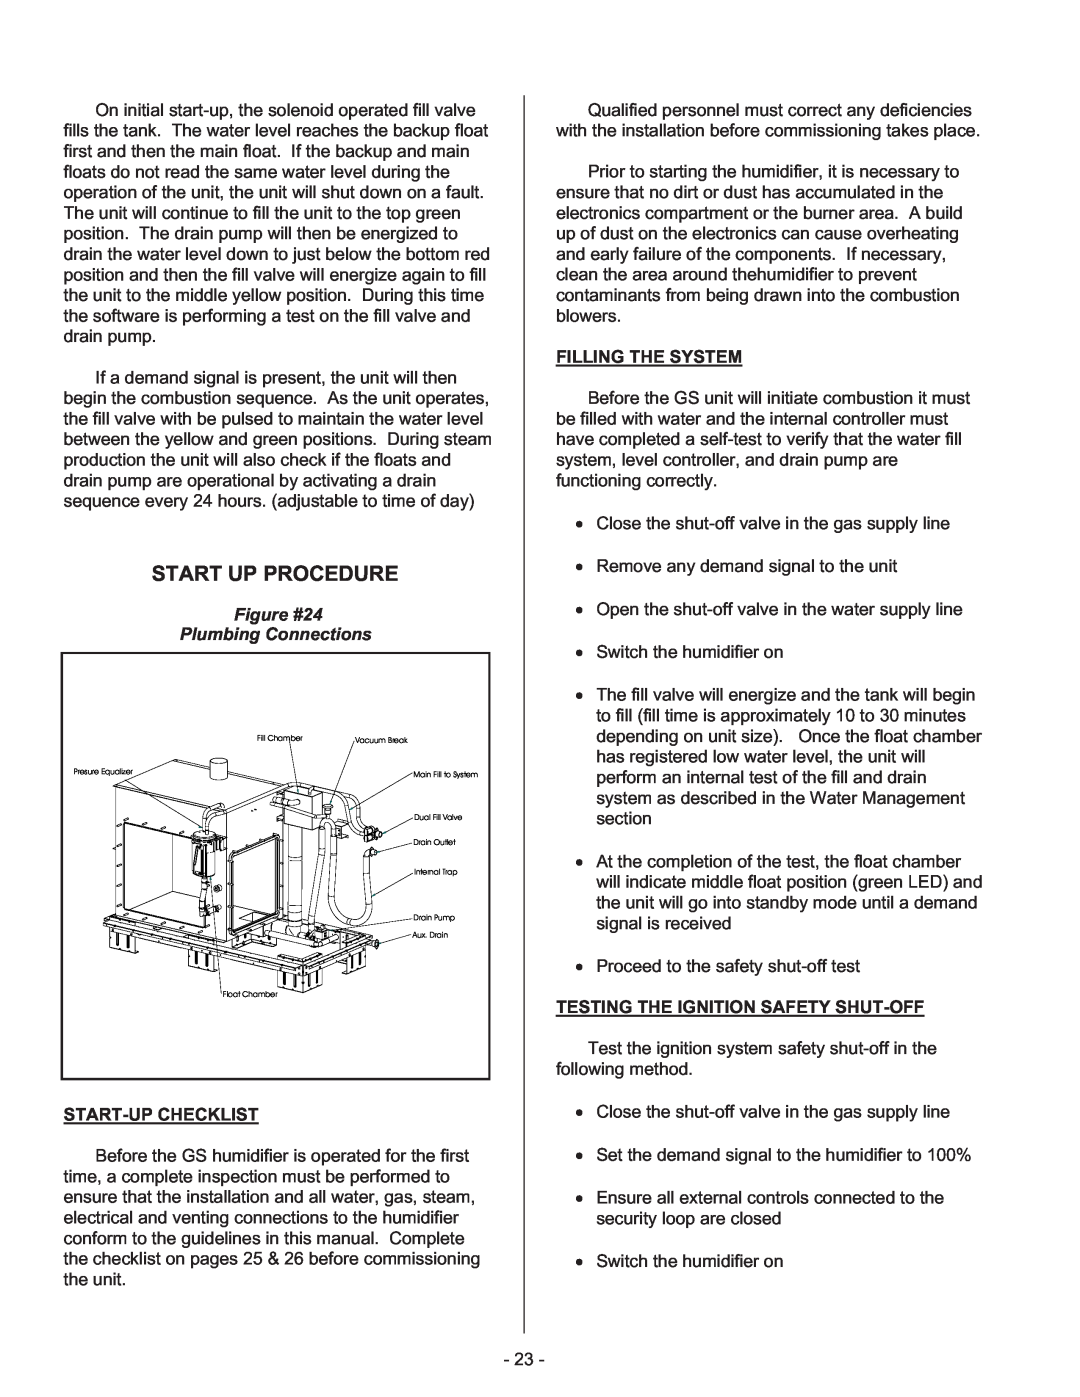 Nortec Industries GS Series manual Start Up Procedure, Figure #24 Plumbing Connections 